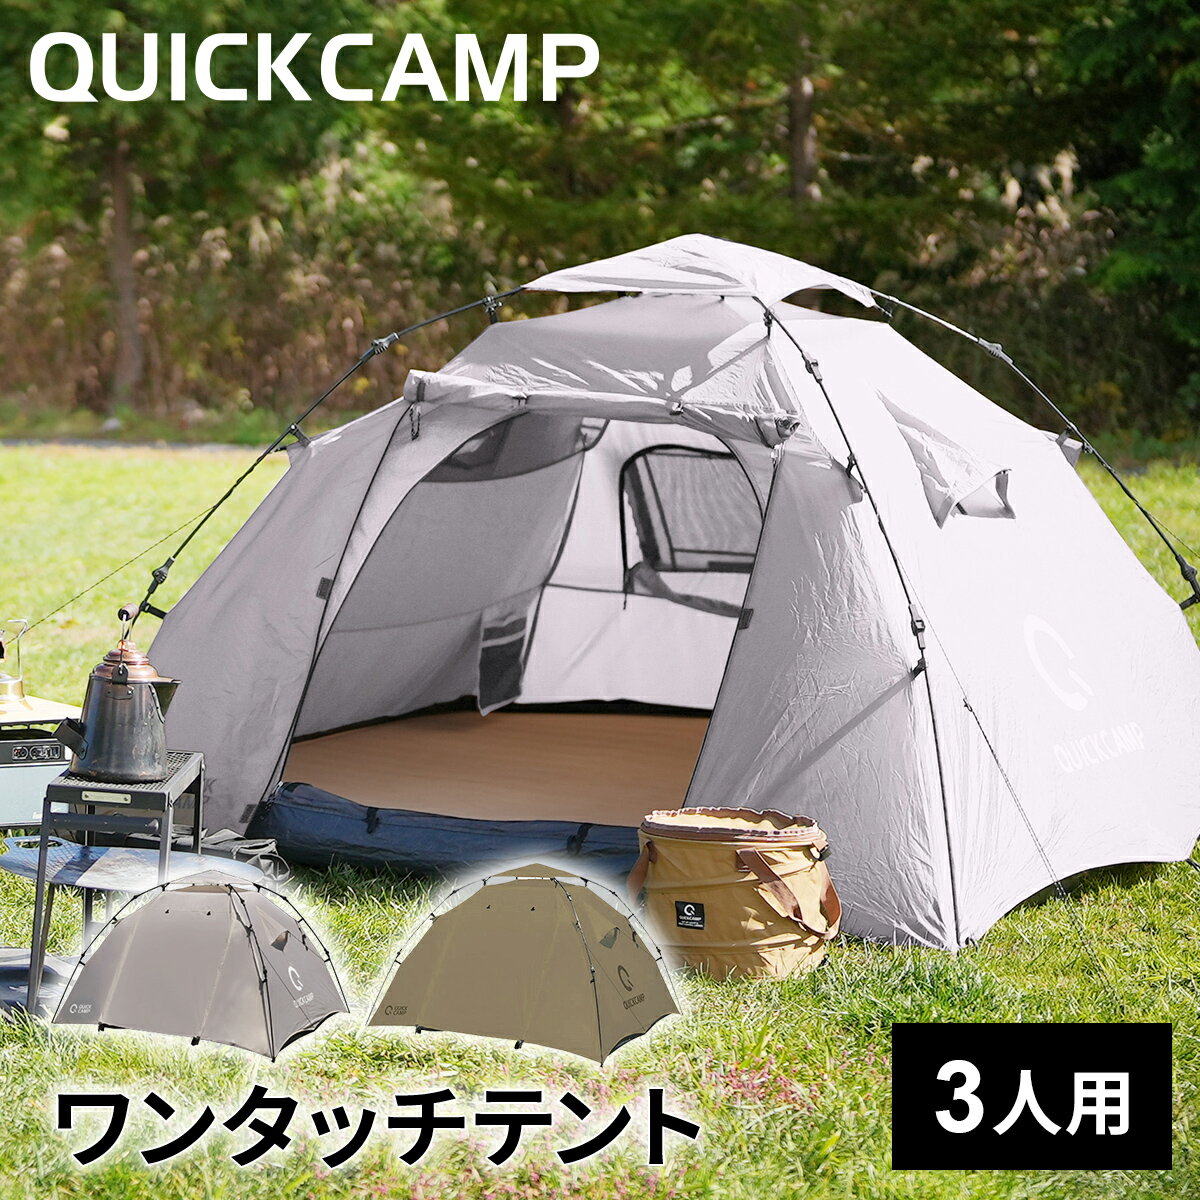 クイックキャンプ QUICKCAMP ダブルウォール ワンタッチテント 3人用 ウォームグレー/タン グランドシートあり/なし 各種 インナーテント付き QC-DT220